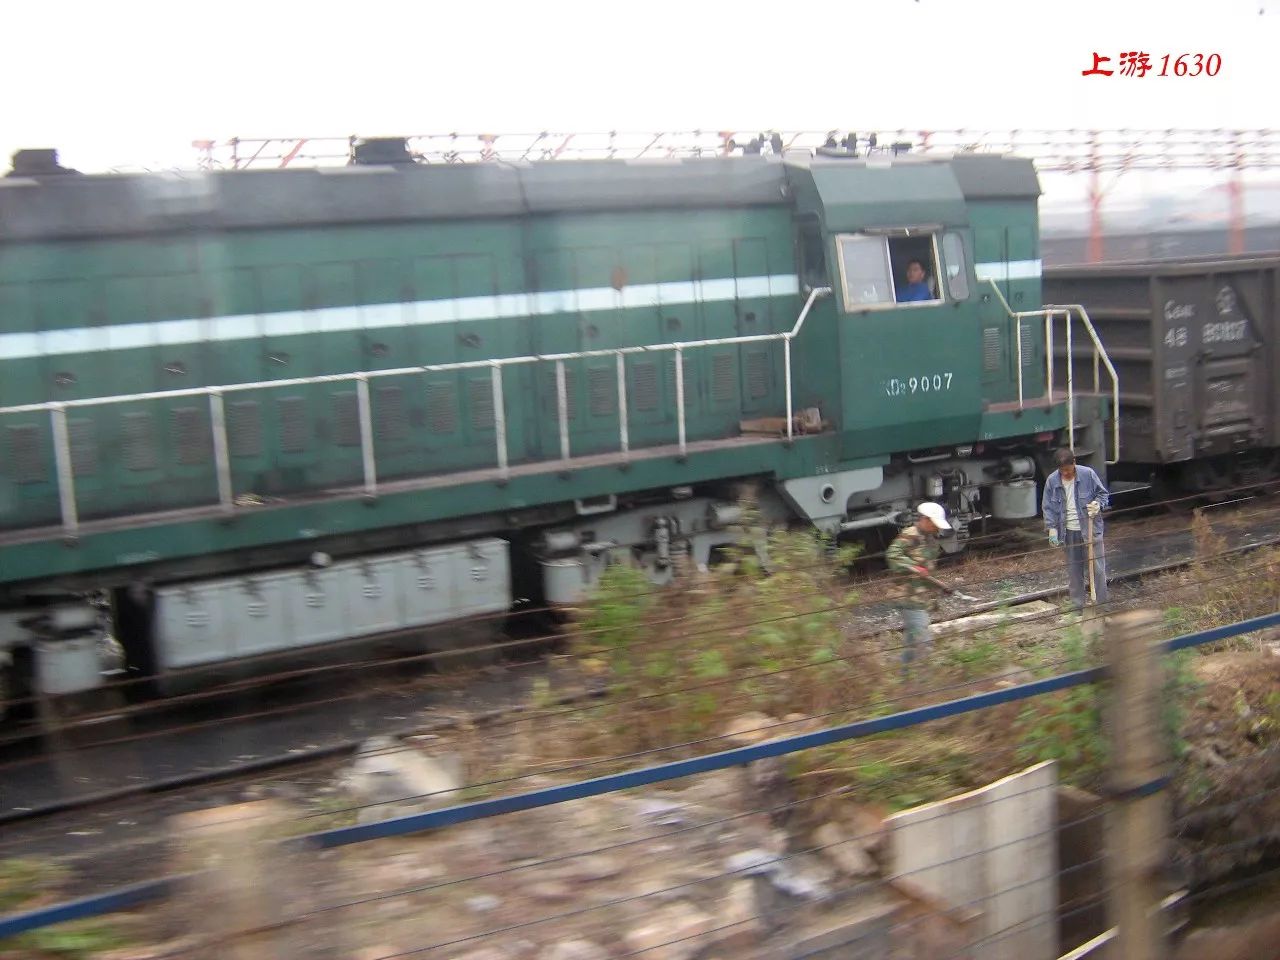 列车驶离鞍山站,旁边出现鞍钢自备内燃机车gkd2-9007